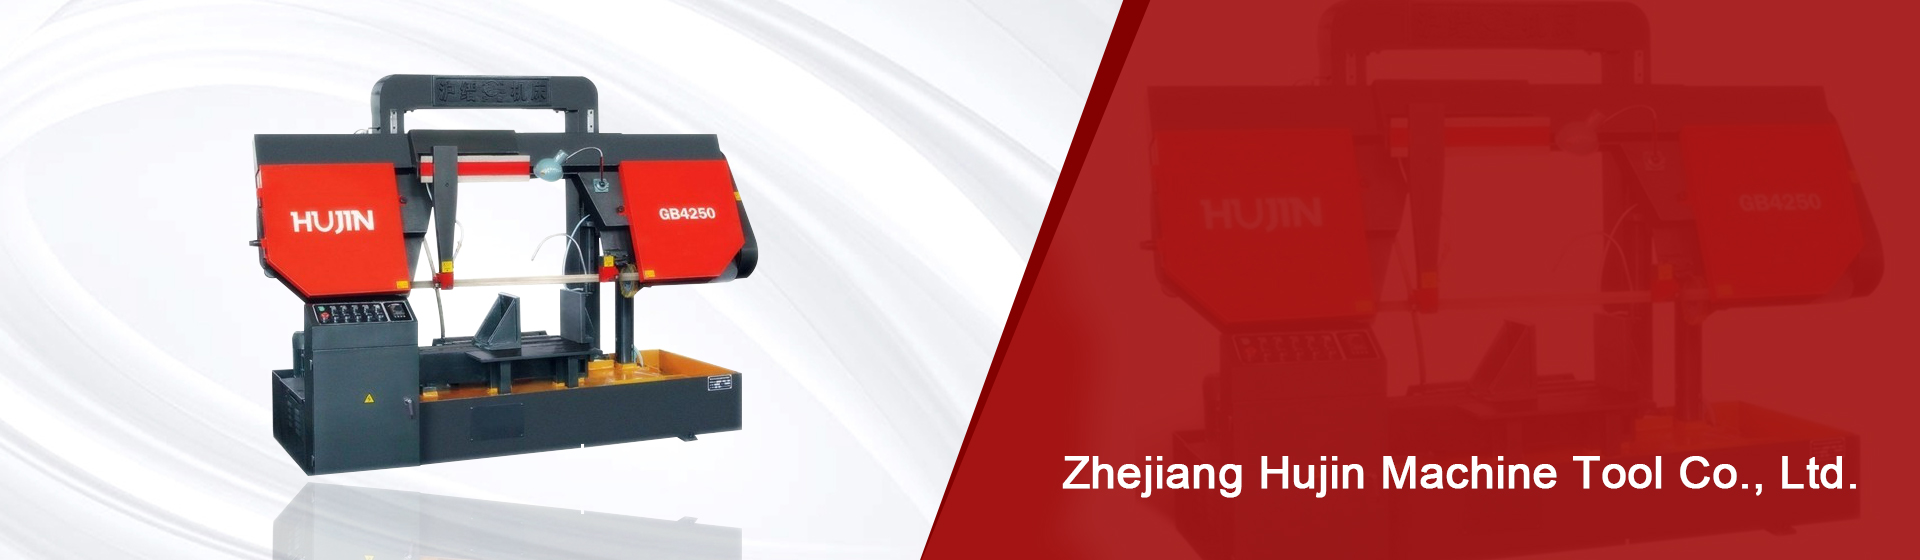 Zhejiang Hujin Machine Tool Co., Ltd.